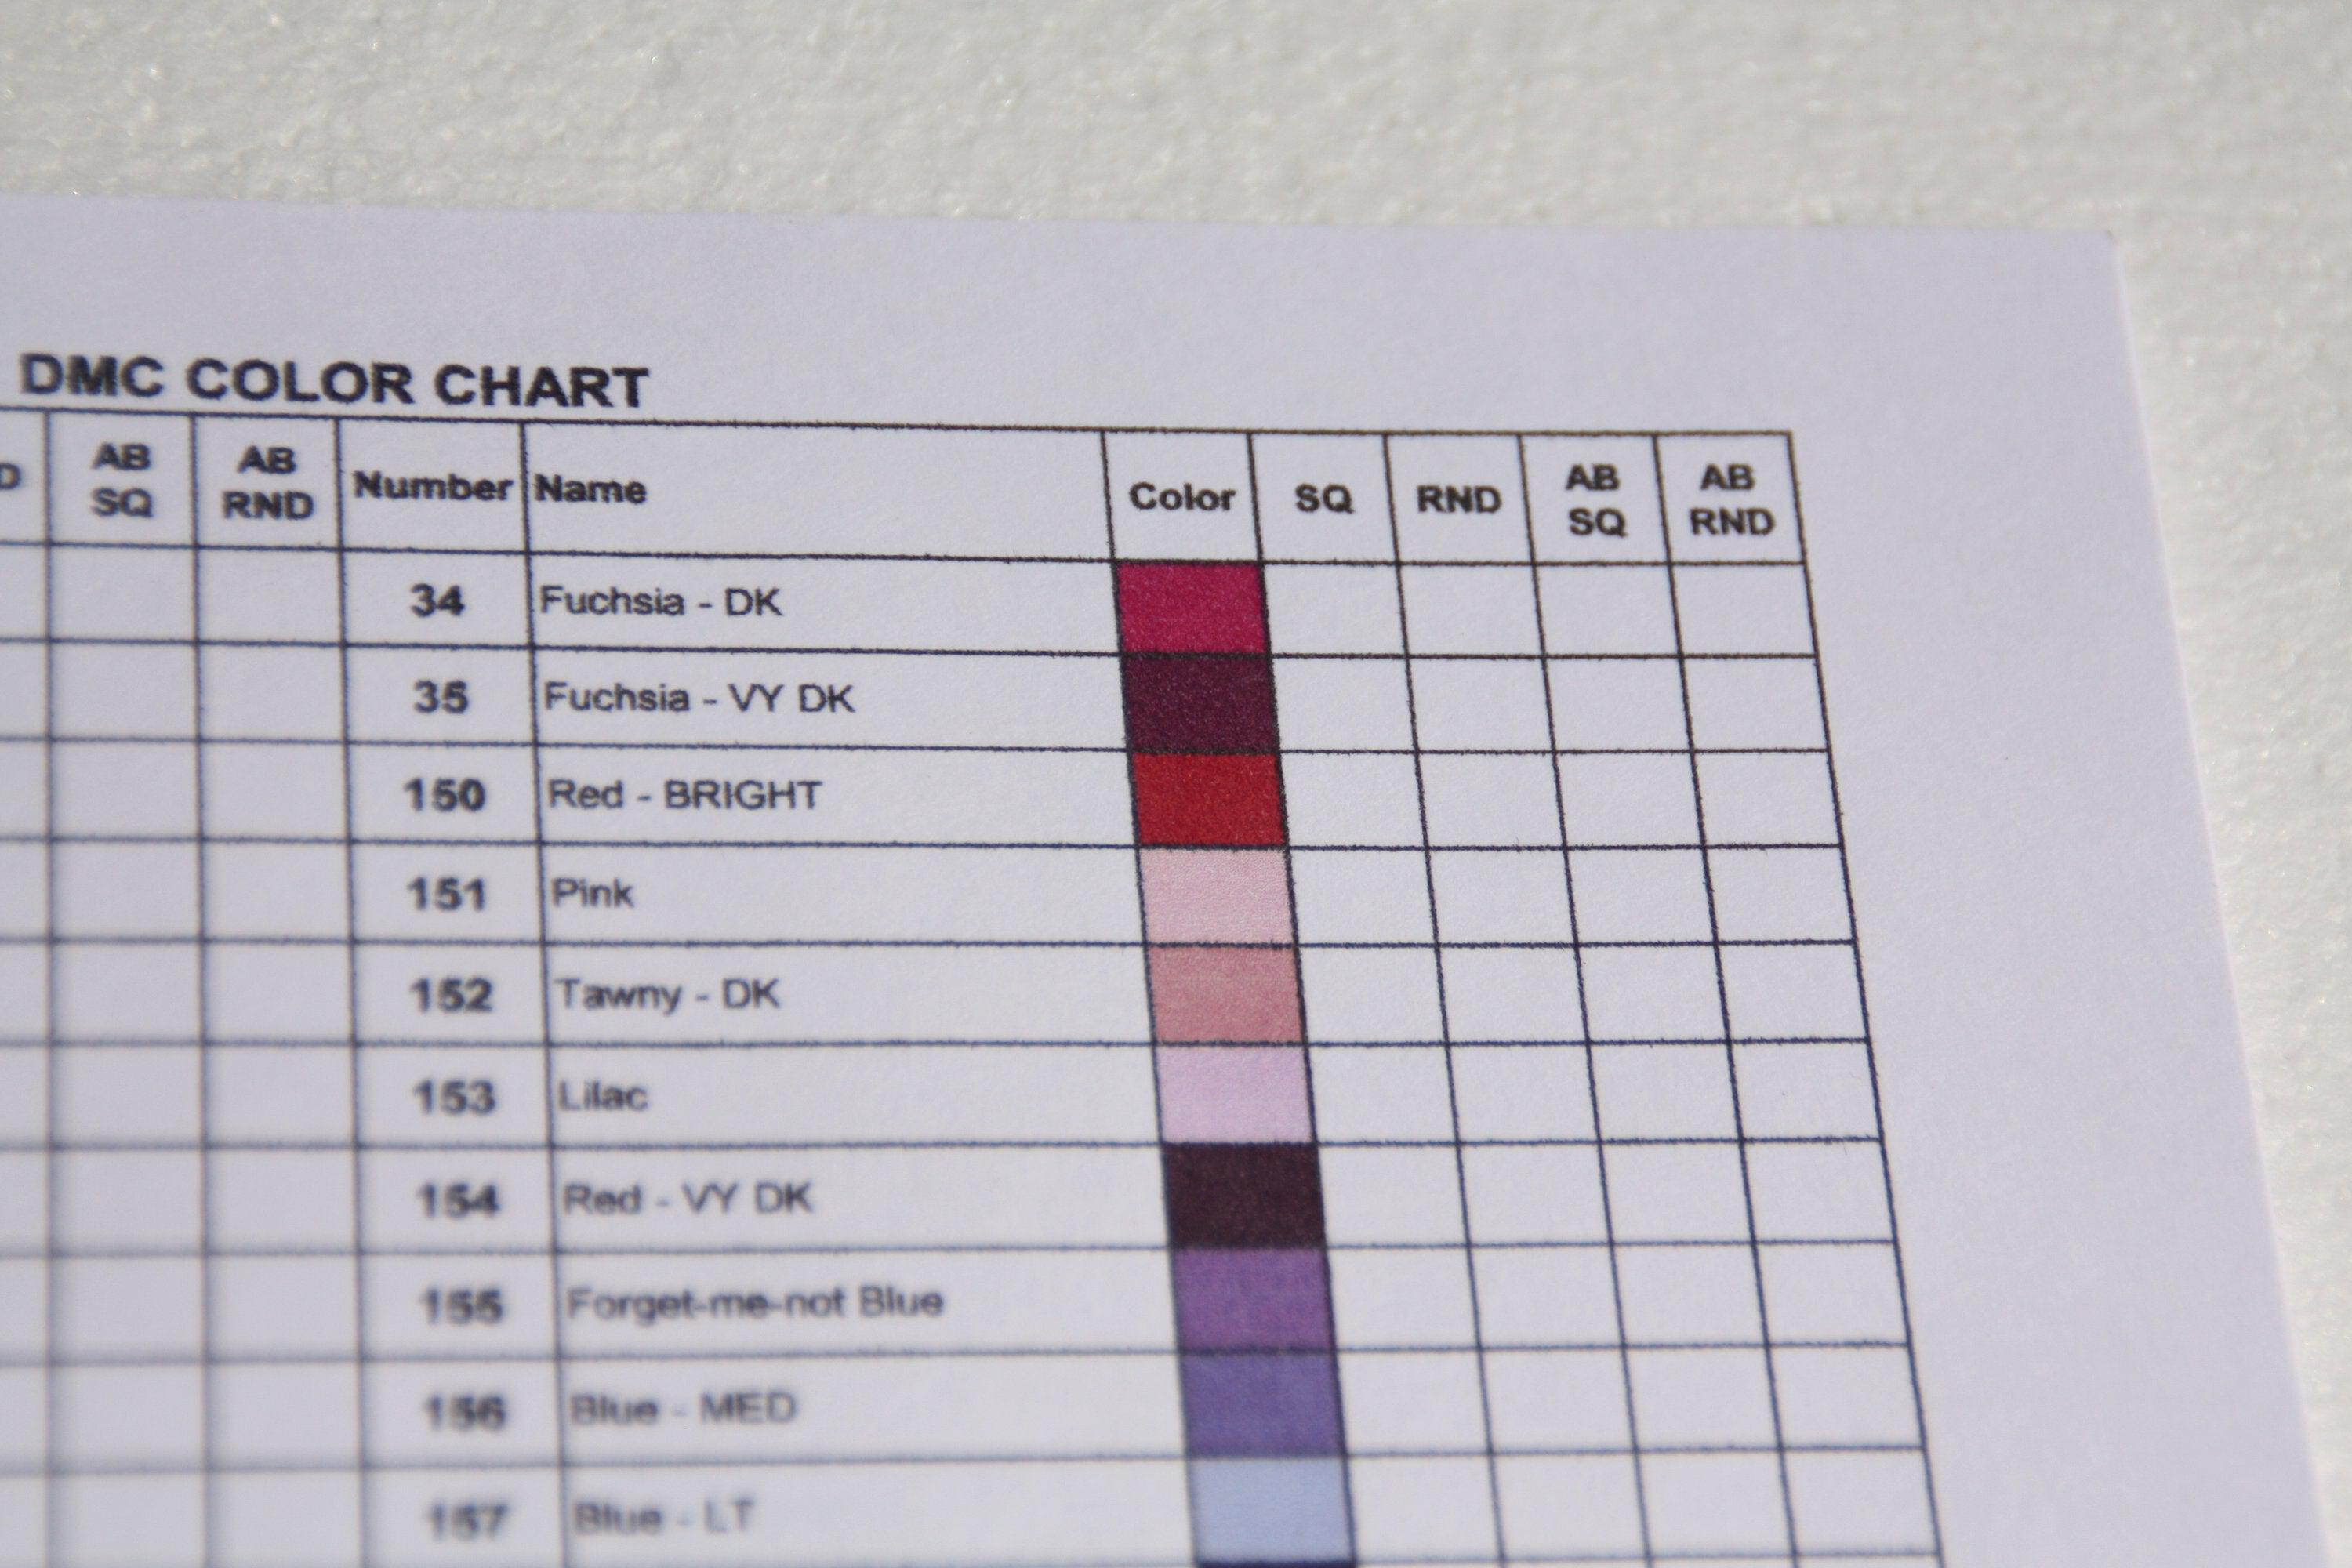 Diamond painting color chart and log book: DMC Color Chart and Log